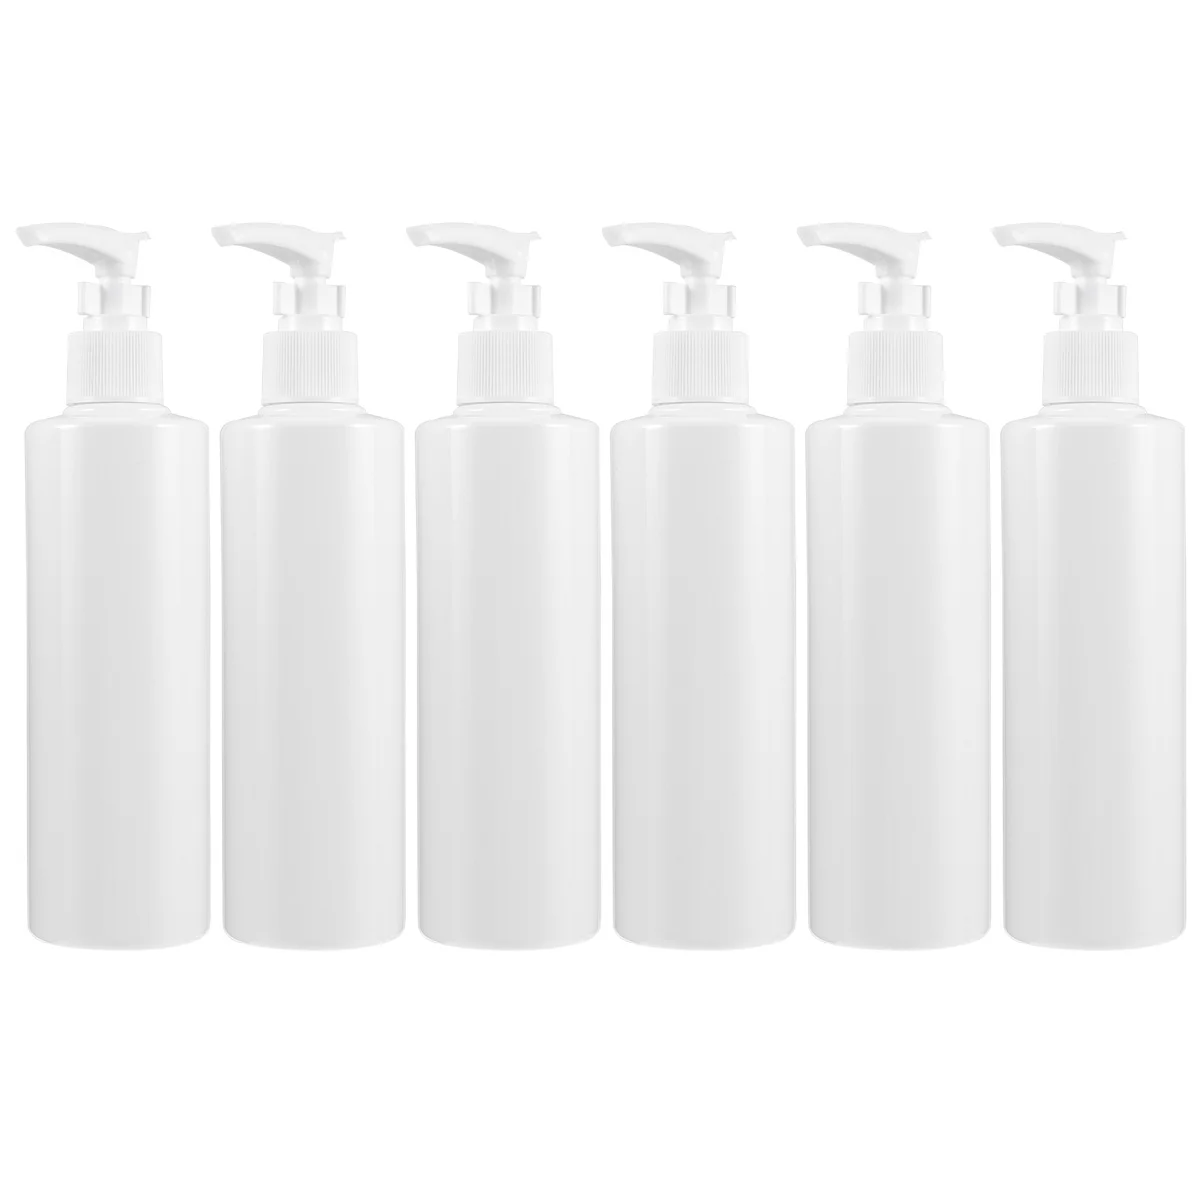 6 PCS Portable Travel Hand Soap Dispenser Shampoo Pump Bottle Toiletries Container